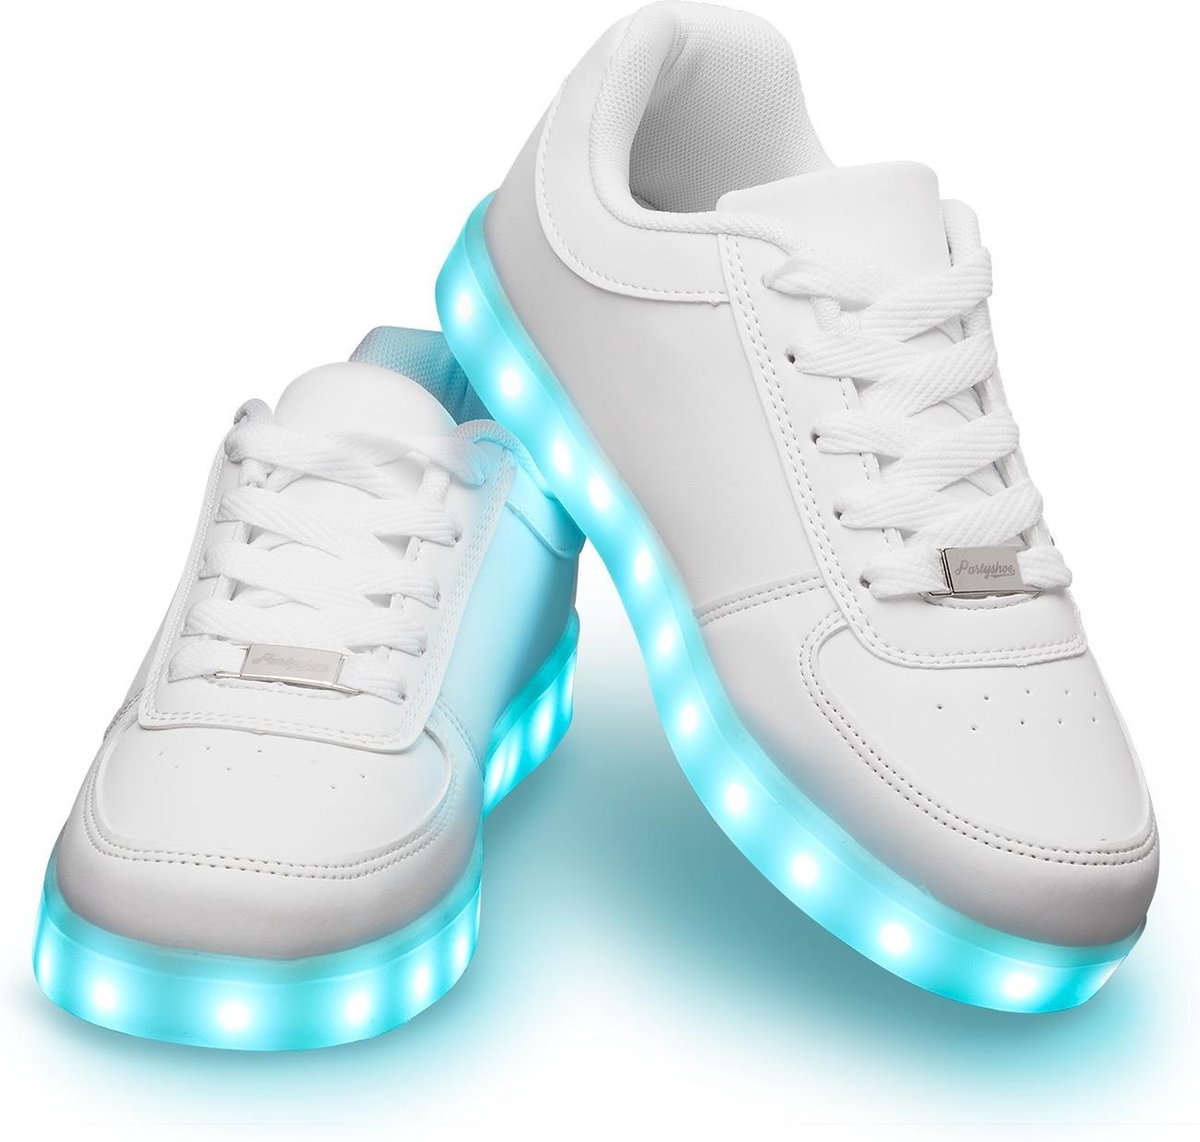 Schoenen met lichtjes - Lichtgevende led schoenen - Wit - Maat 39